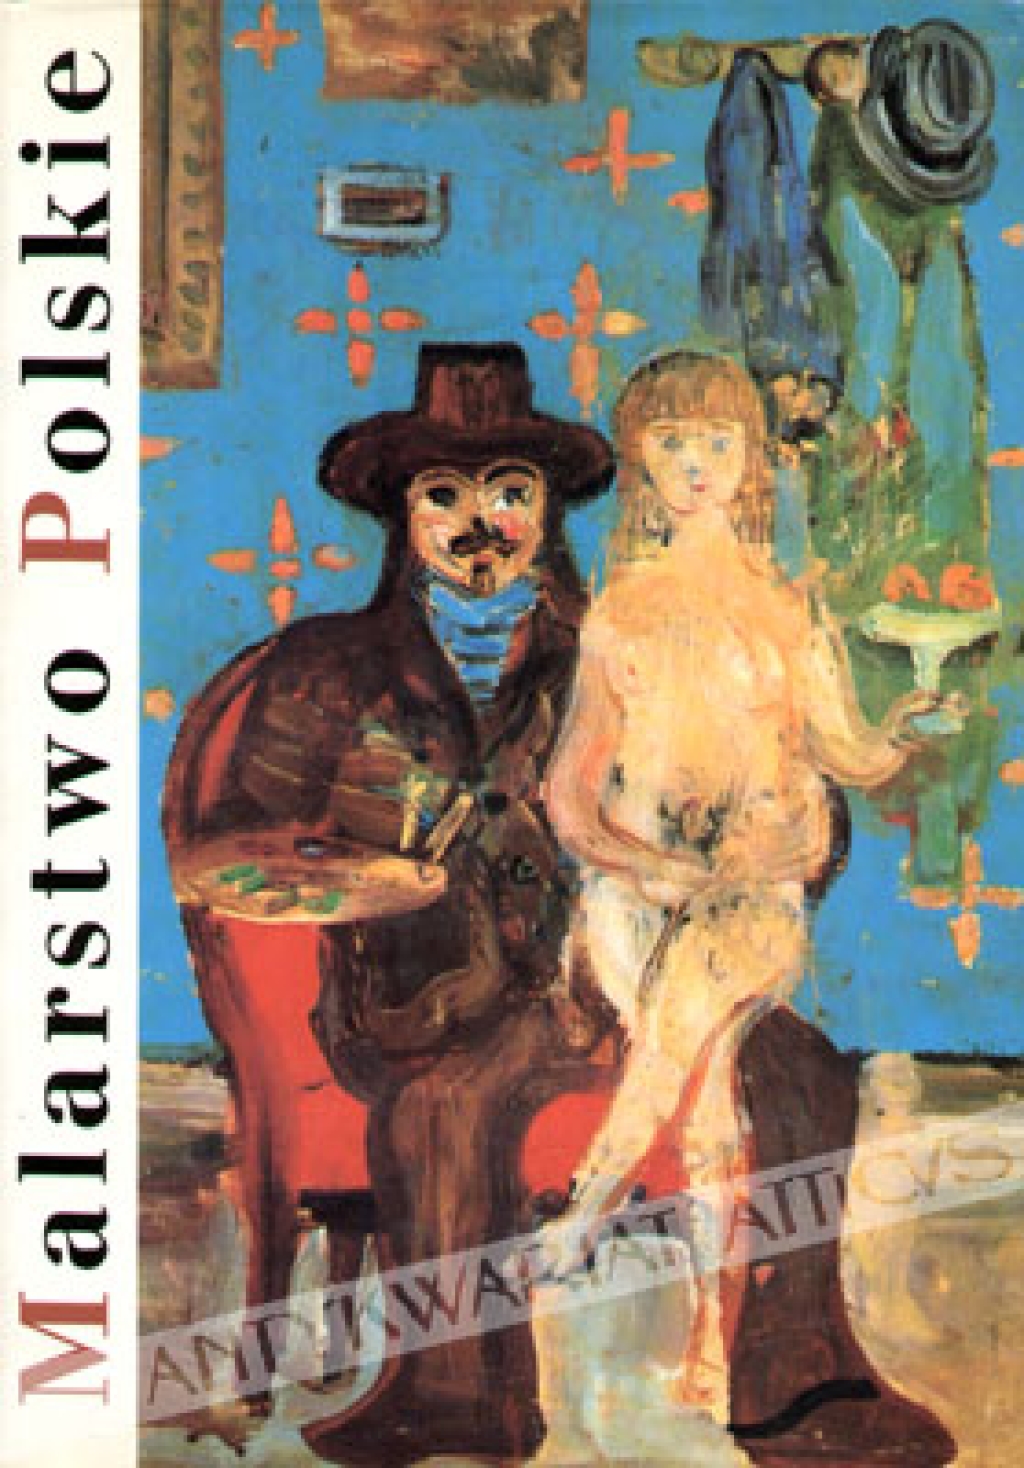 Malarstwo polskie między wojnami 1918-1939